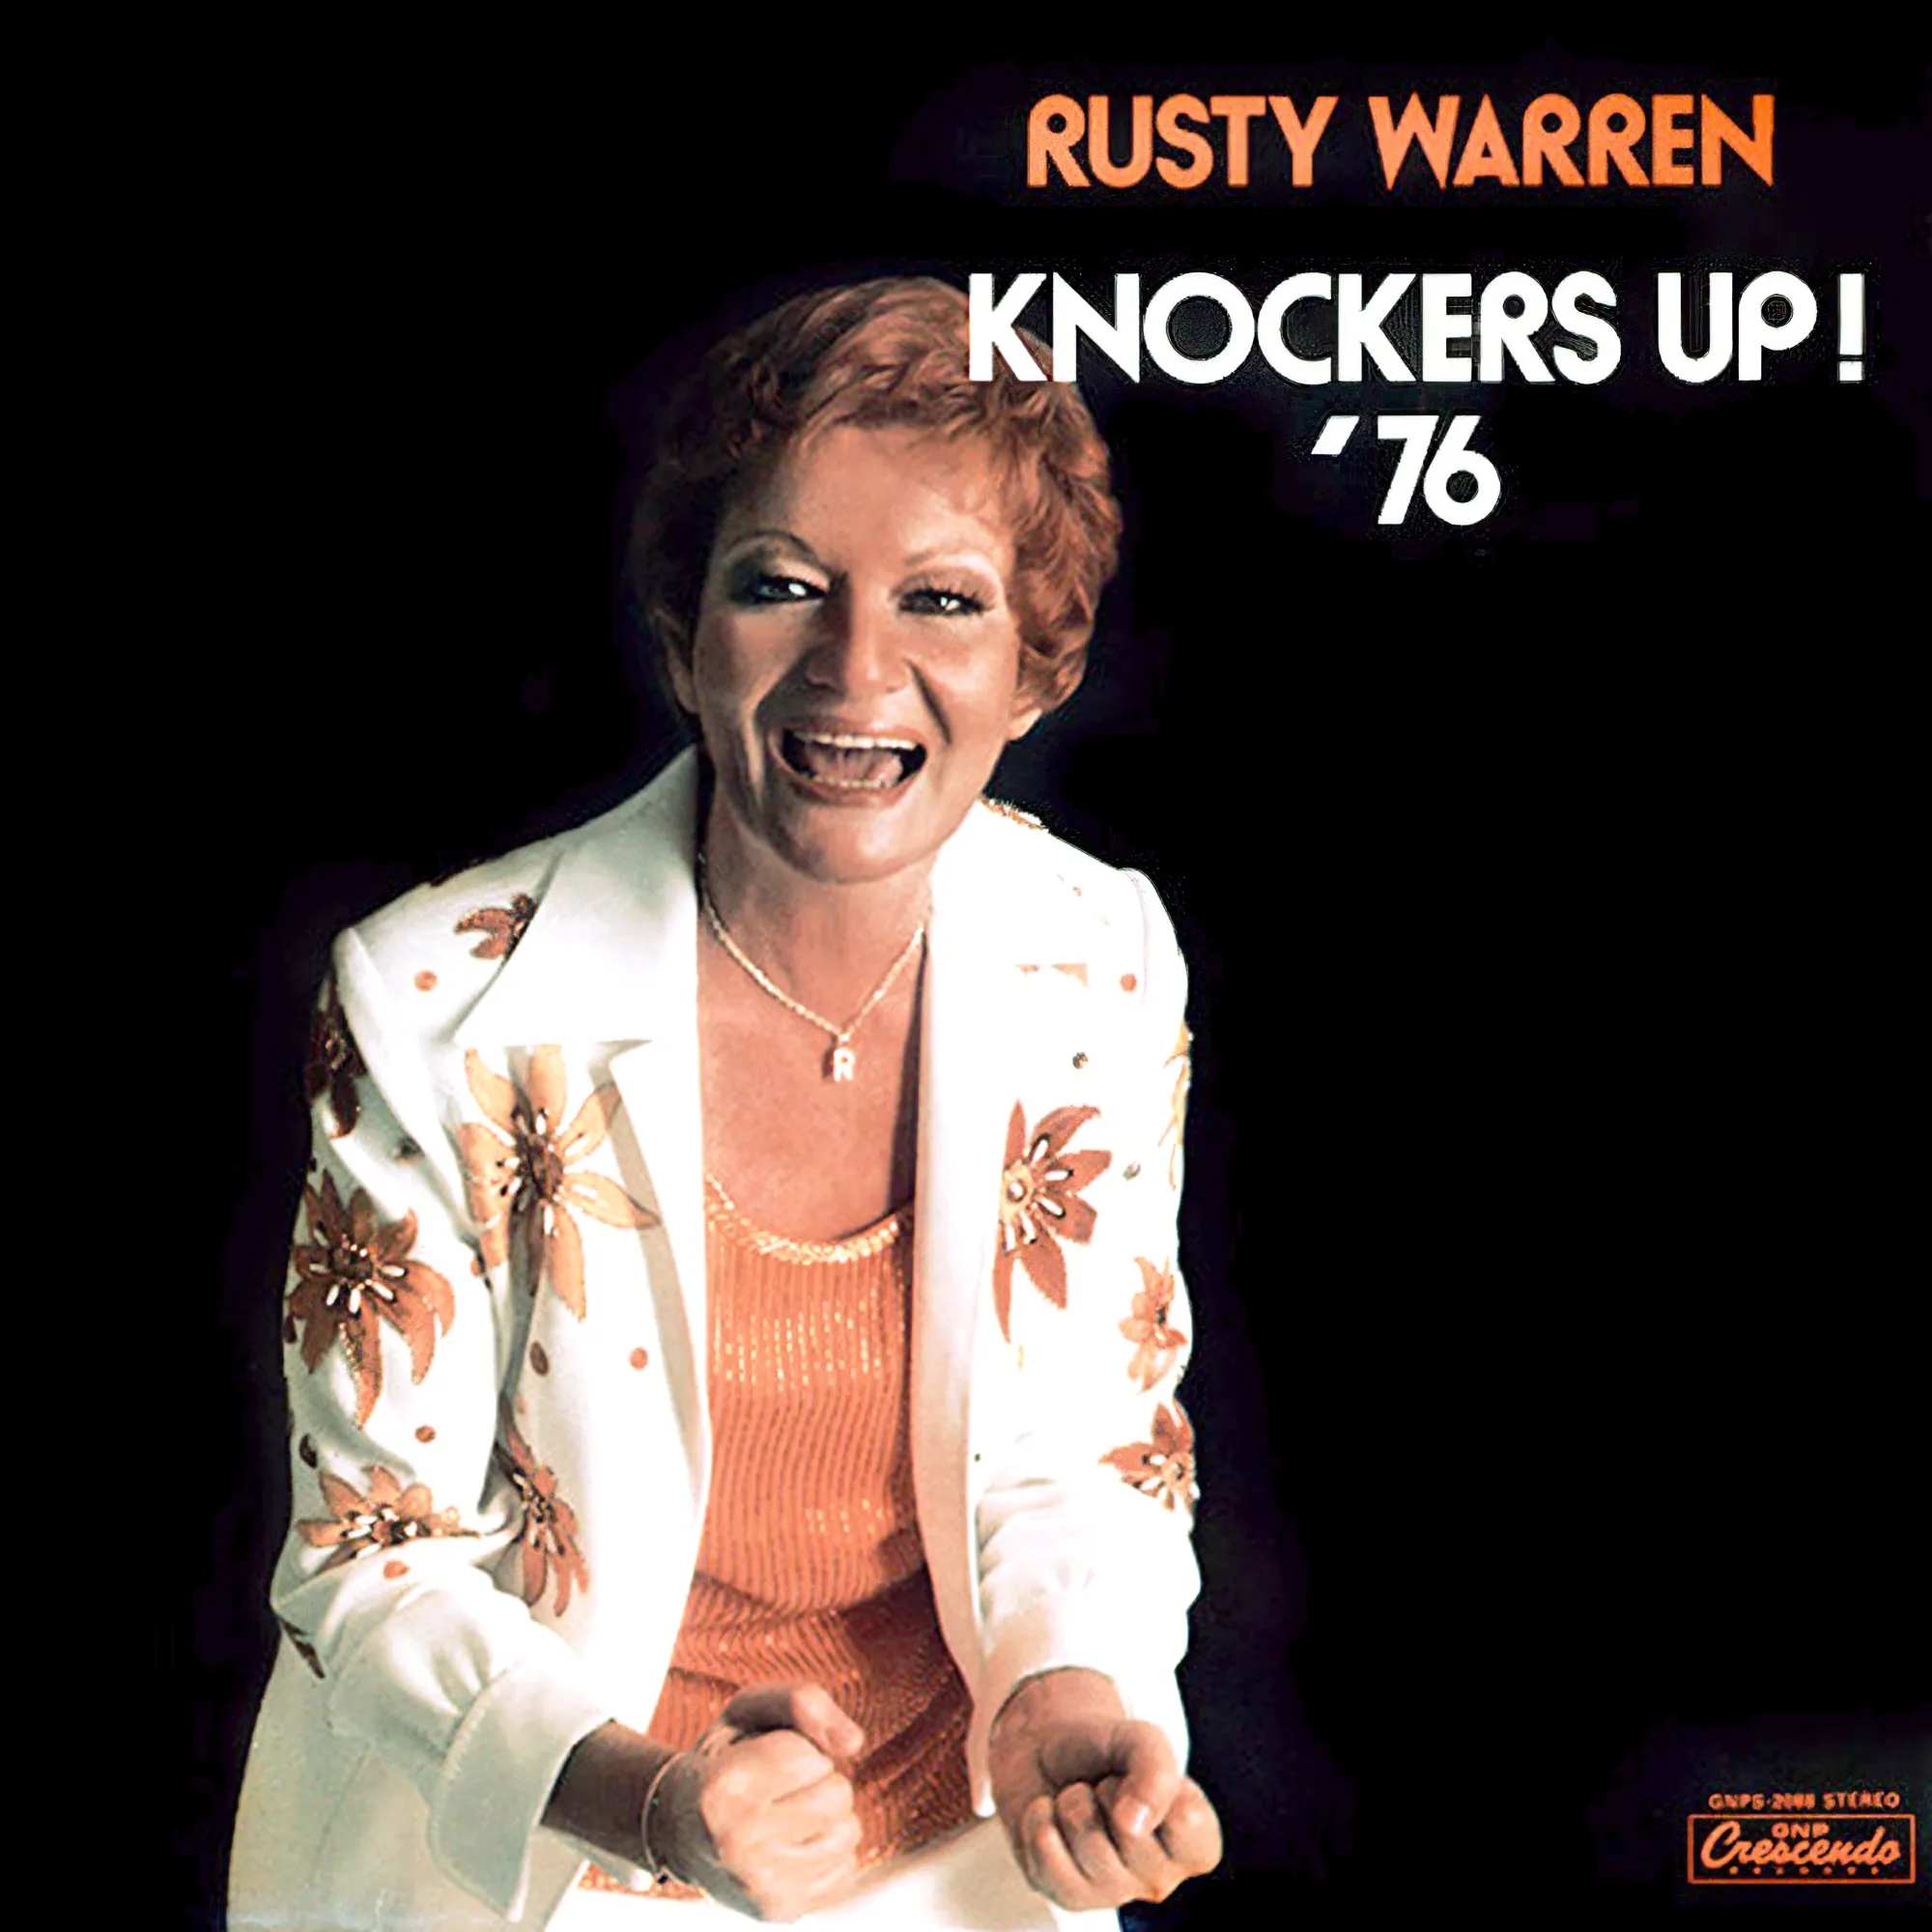 Rusty Warren album cover: Knockers Up! ‘76